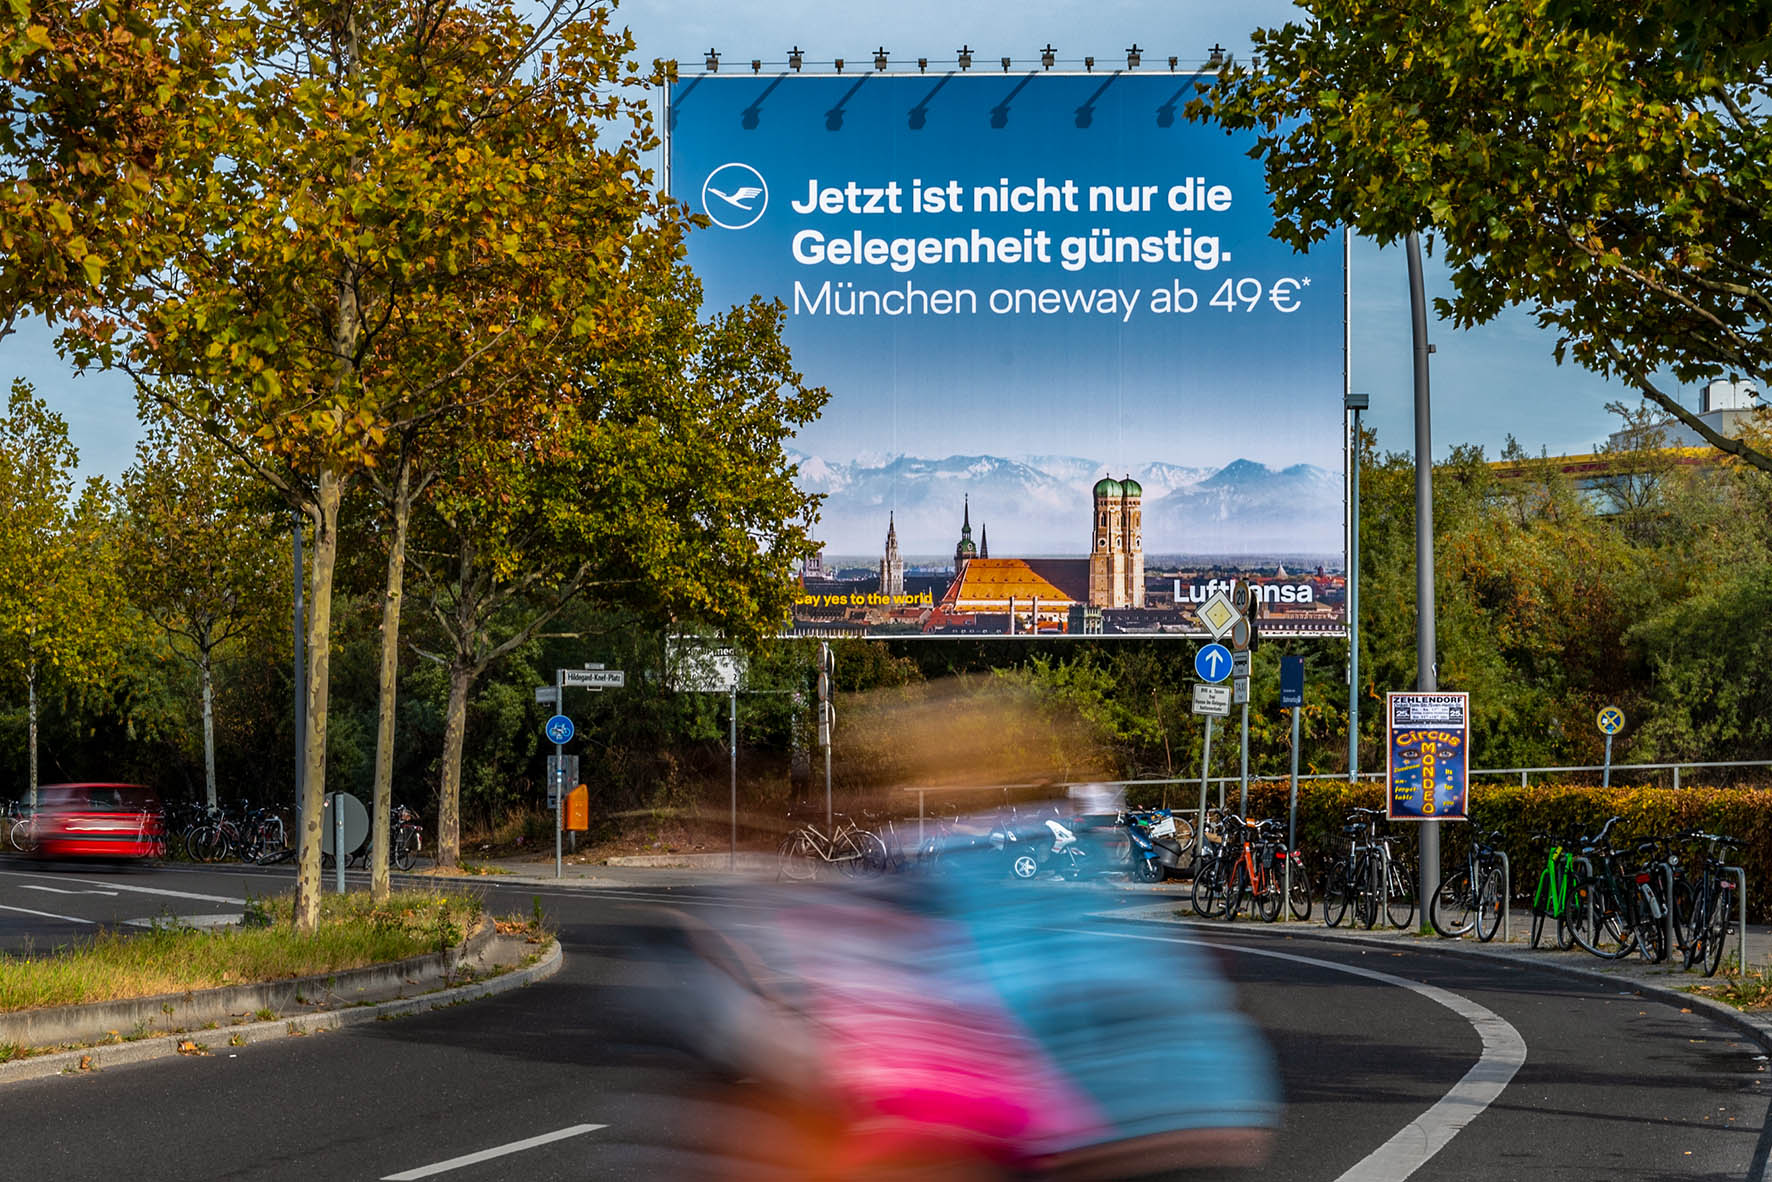 OOH Kampagne für die Lufthansa am Bahnhof Berlin Südkreuz